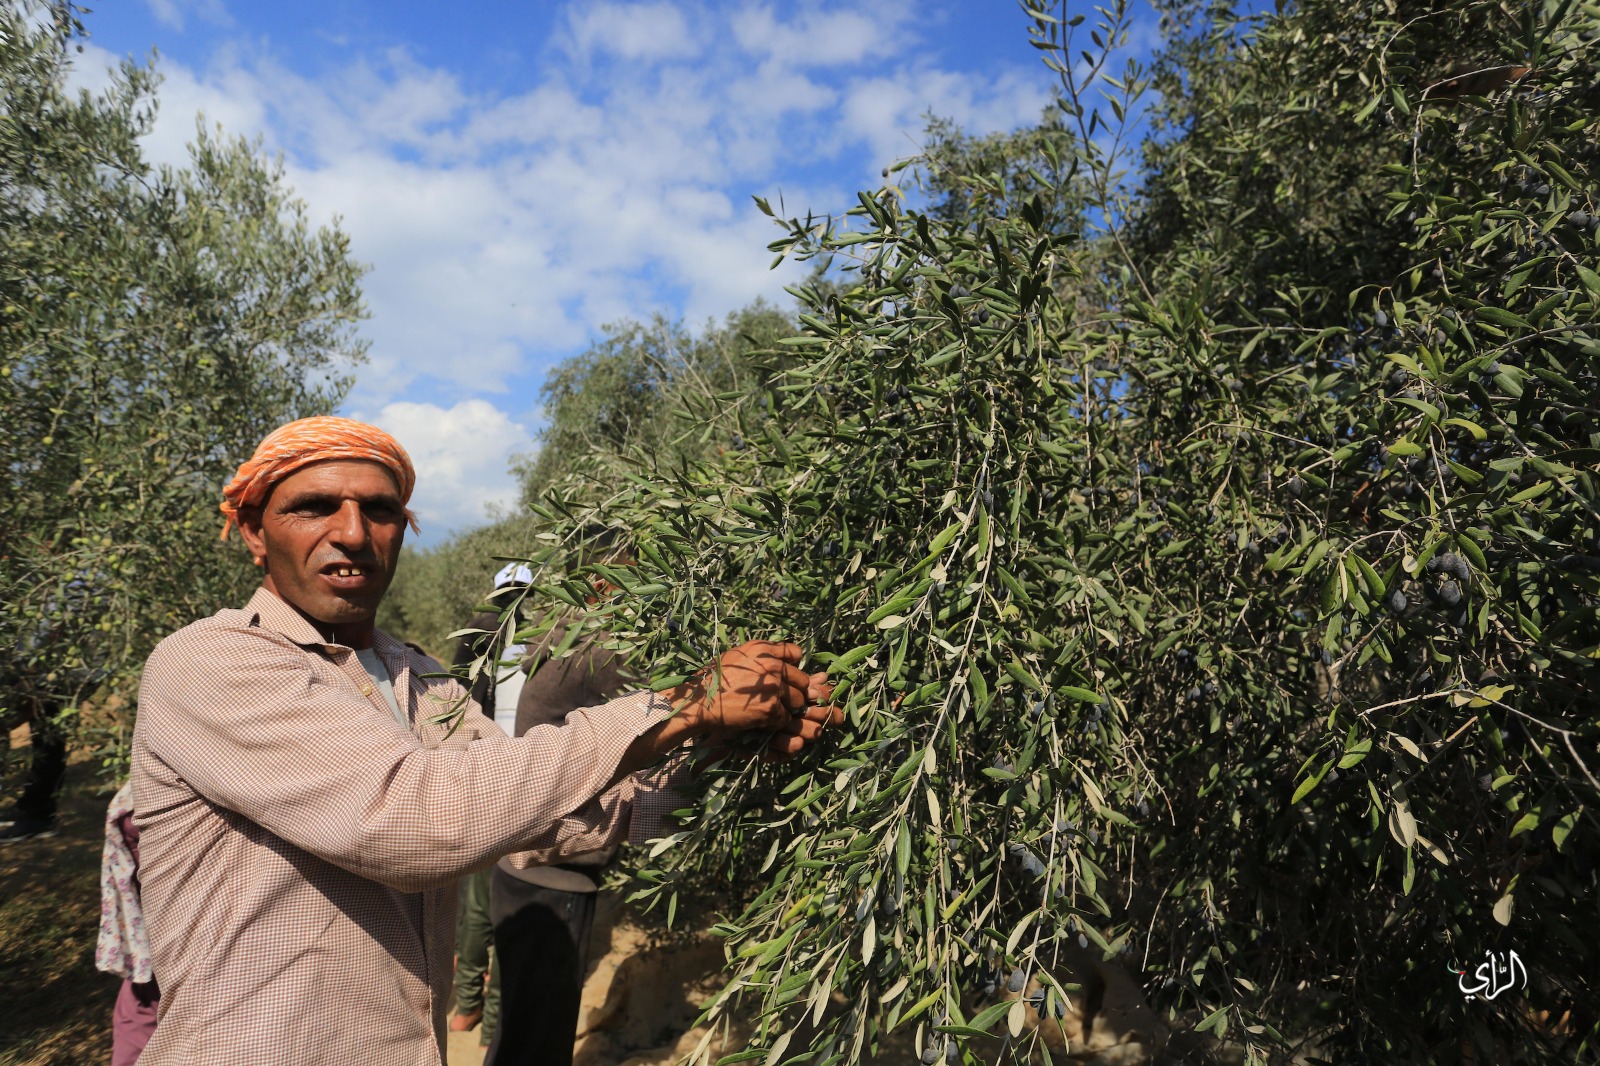 خبير زراعي: غزة تحقق رقمًا قياسيًا لم تشهد له مثيل في إنتاج الزيتون